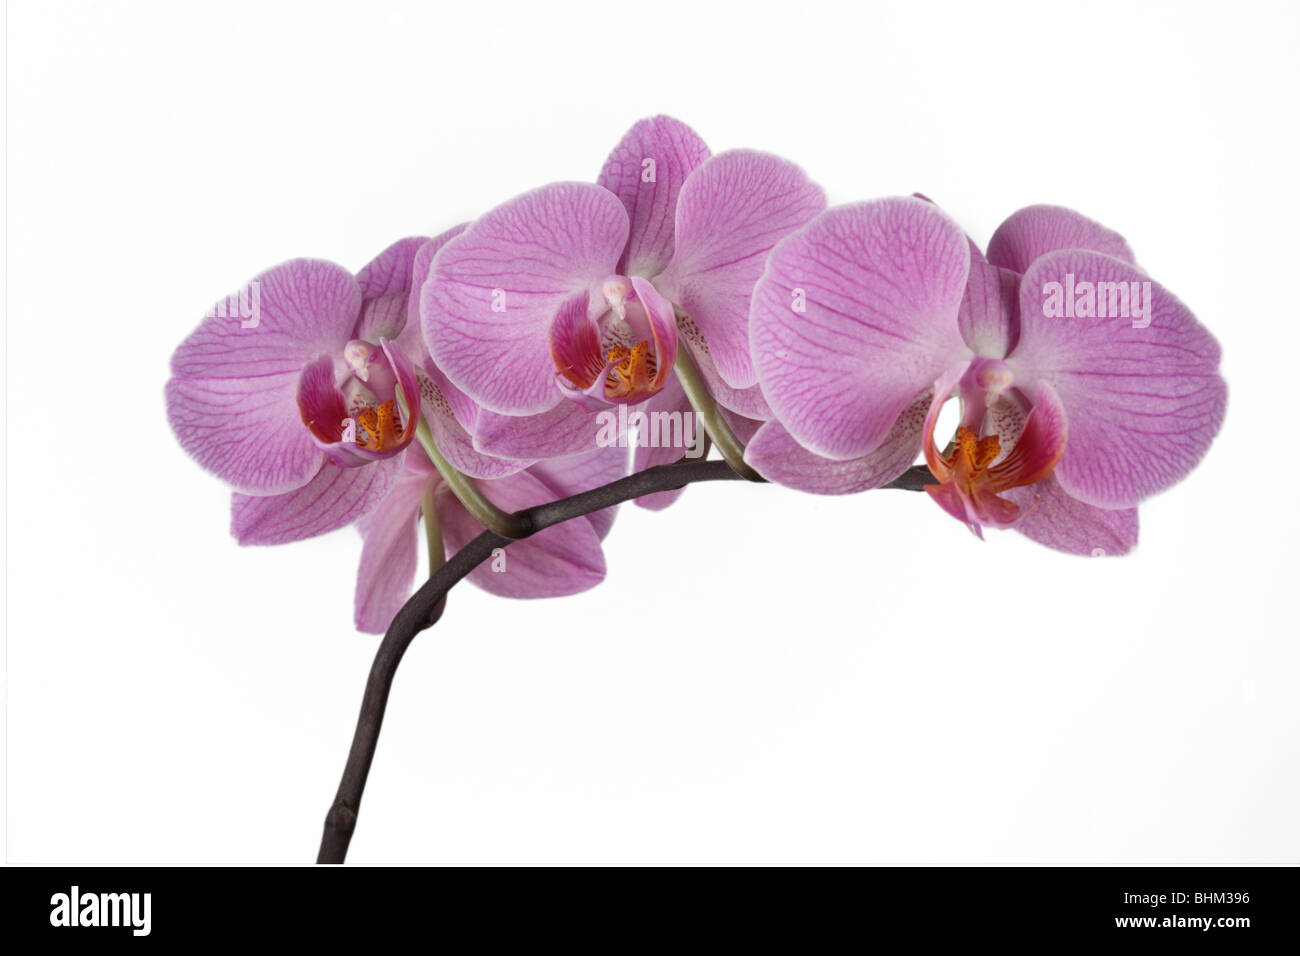 Nahaufnahme eines rosa Phalaenopsis-Orchideenstammes (Moth-Orchidee), isoliert vor einem weißen Hintergrund Stockfoto